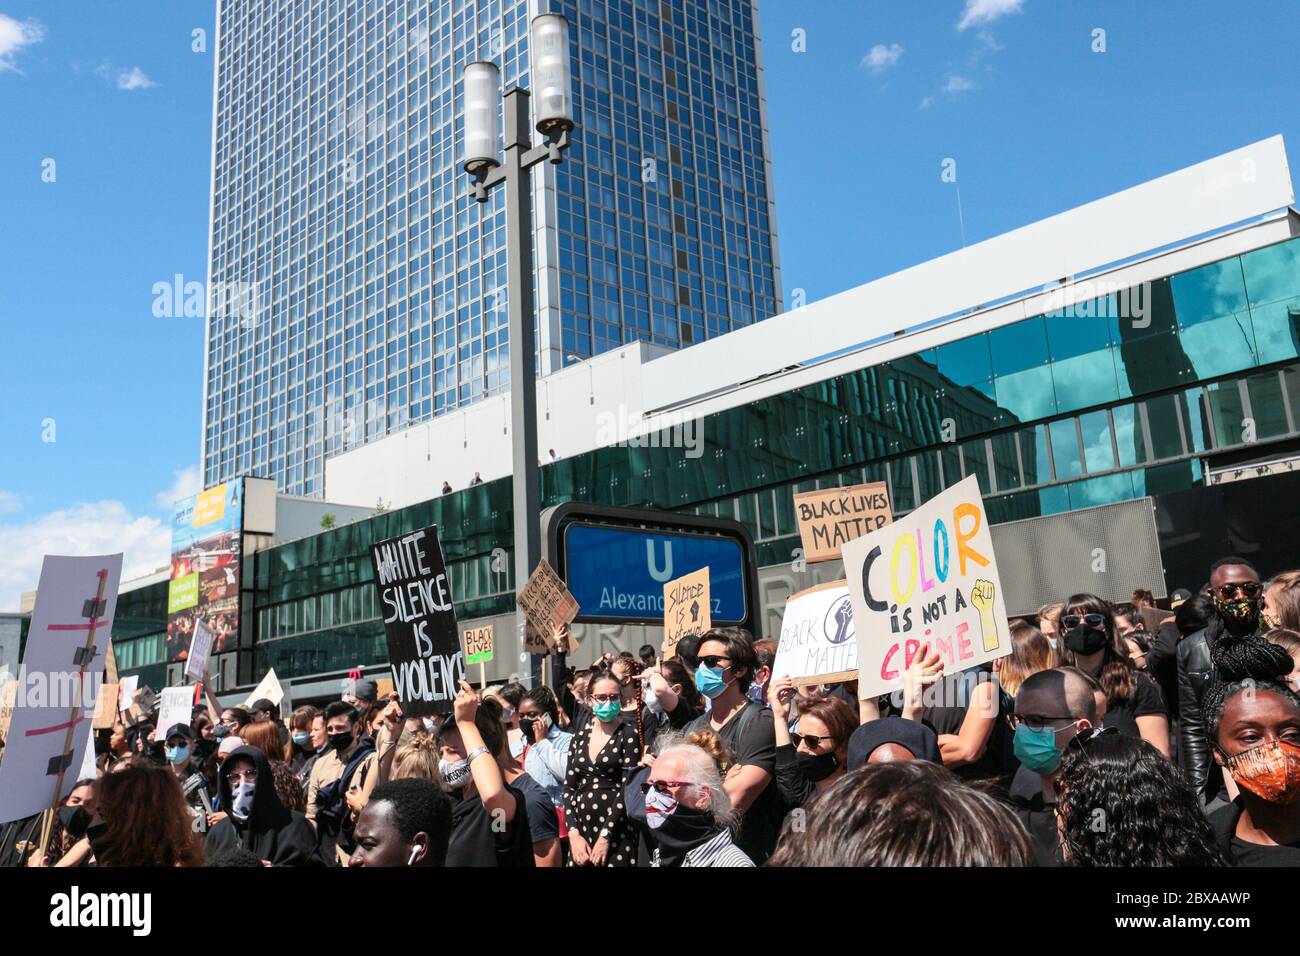 Des foules de manifestants avec des pancartes antiracistes à Black Lives ont des protestations importantes sur Alexanderplatz Berlin, Allemagne, après la mort de George Floyd. Banque D'Images